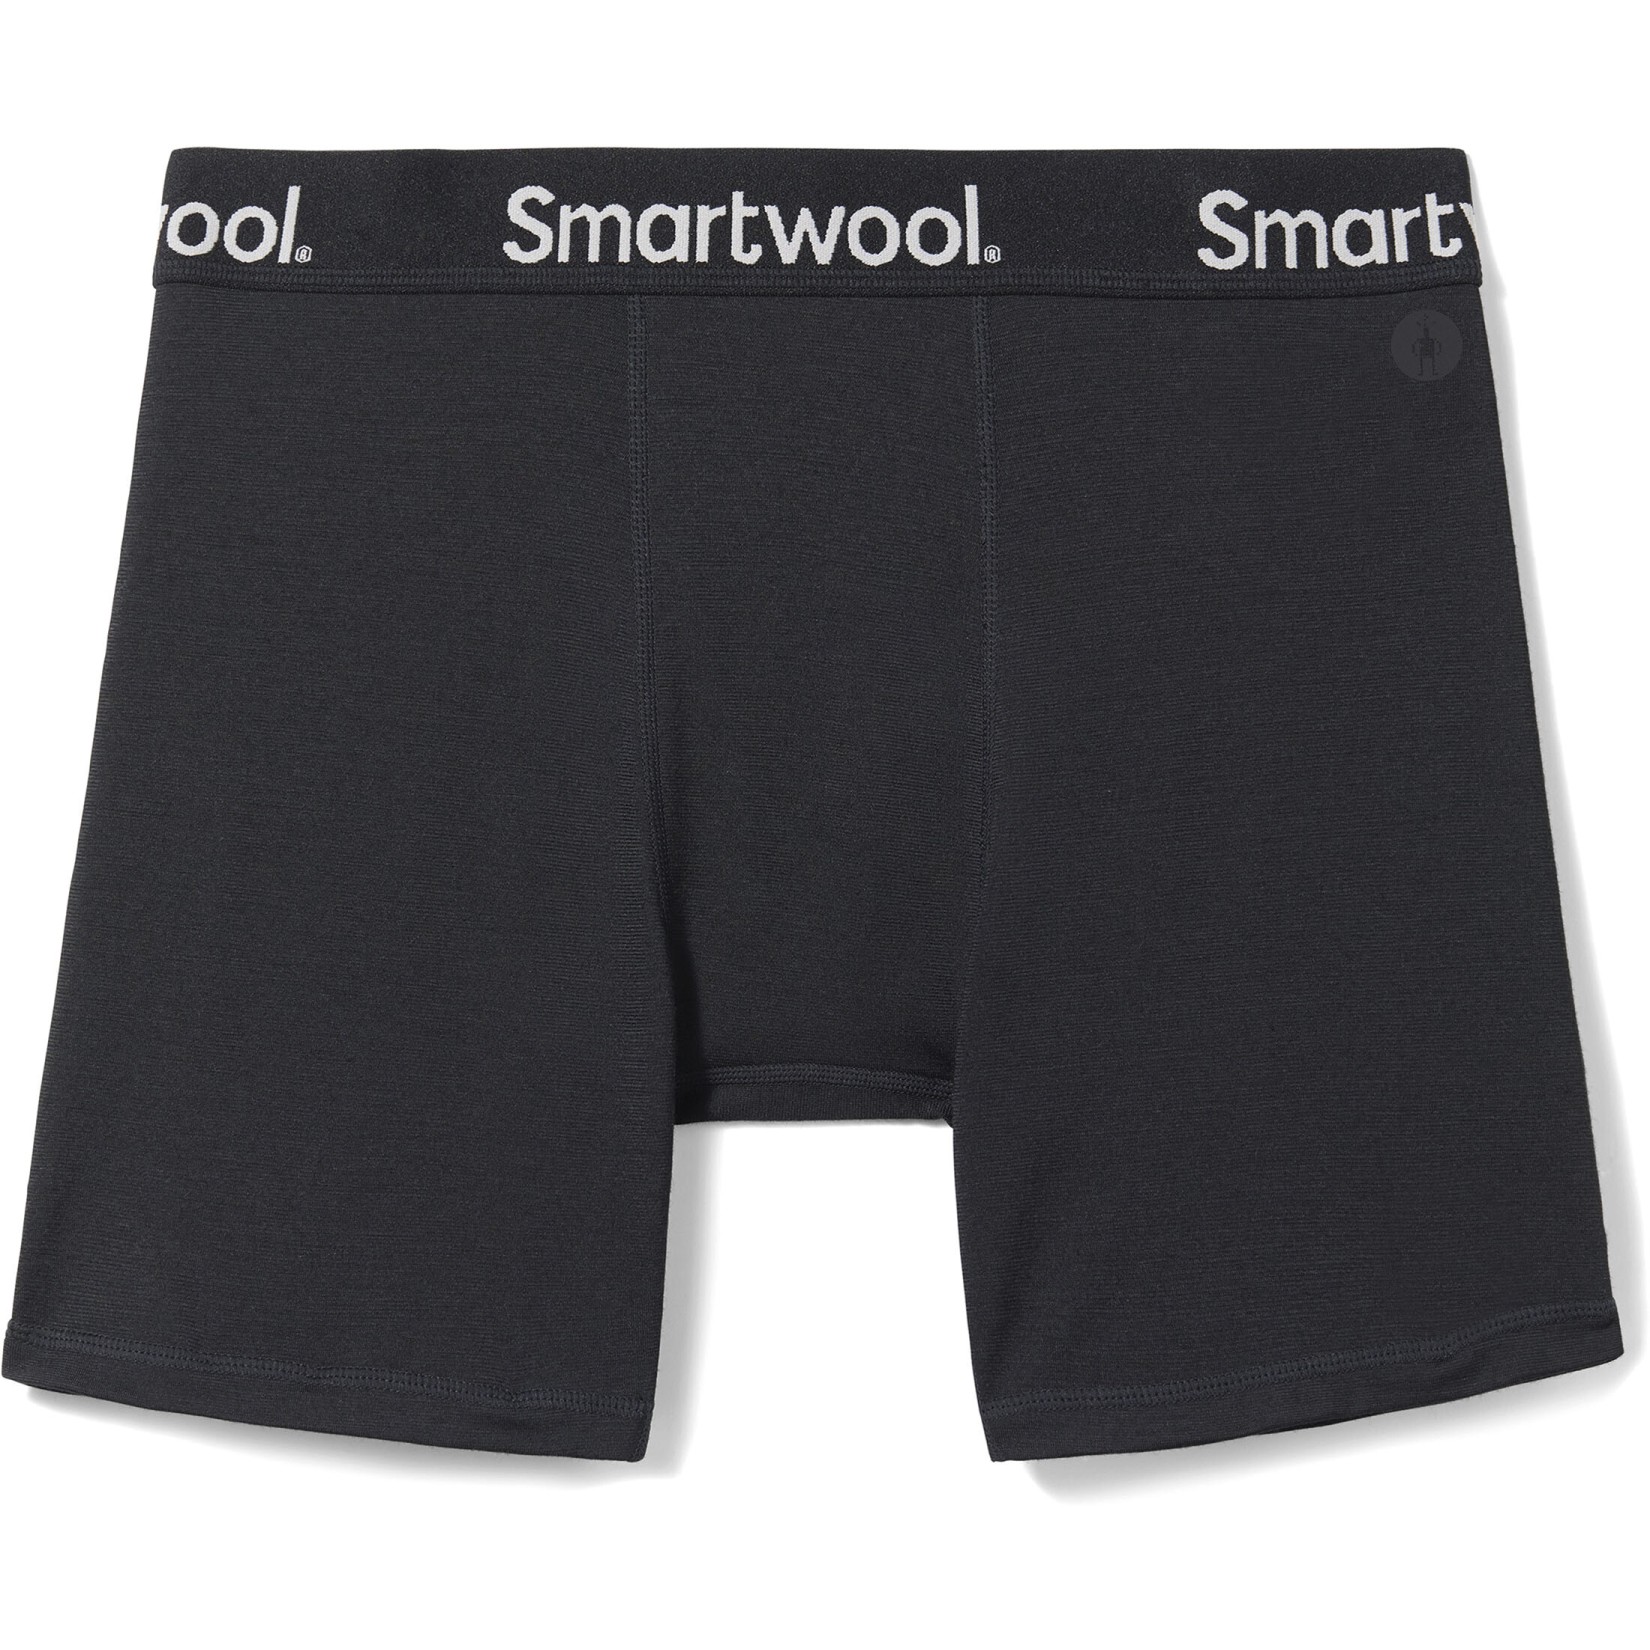 Produktbild von SmartWool Boxershorts Boxed - 001 schwarz